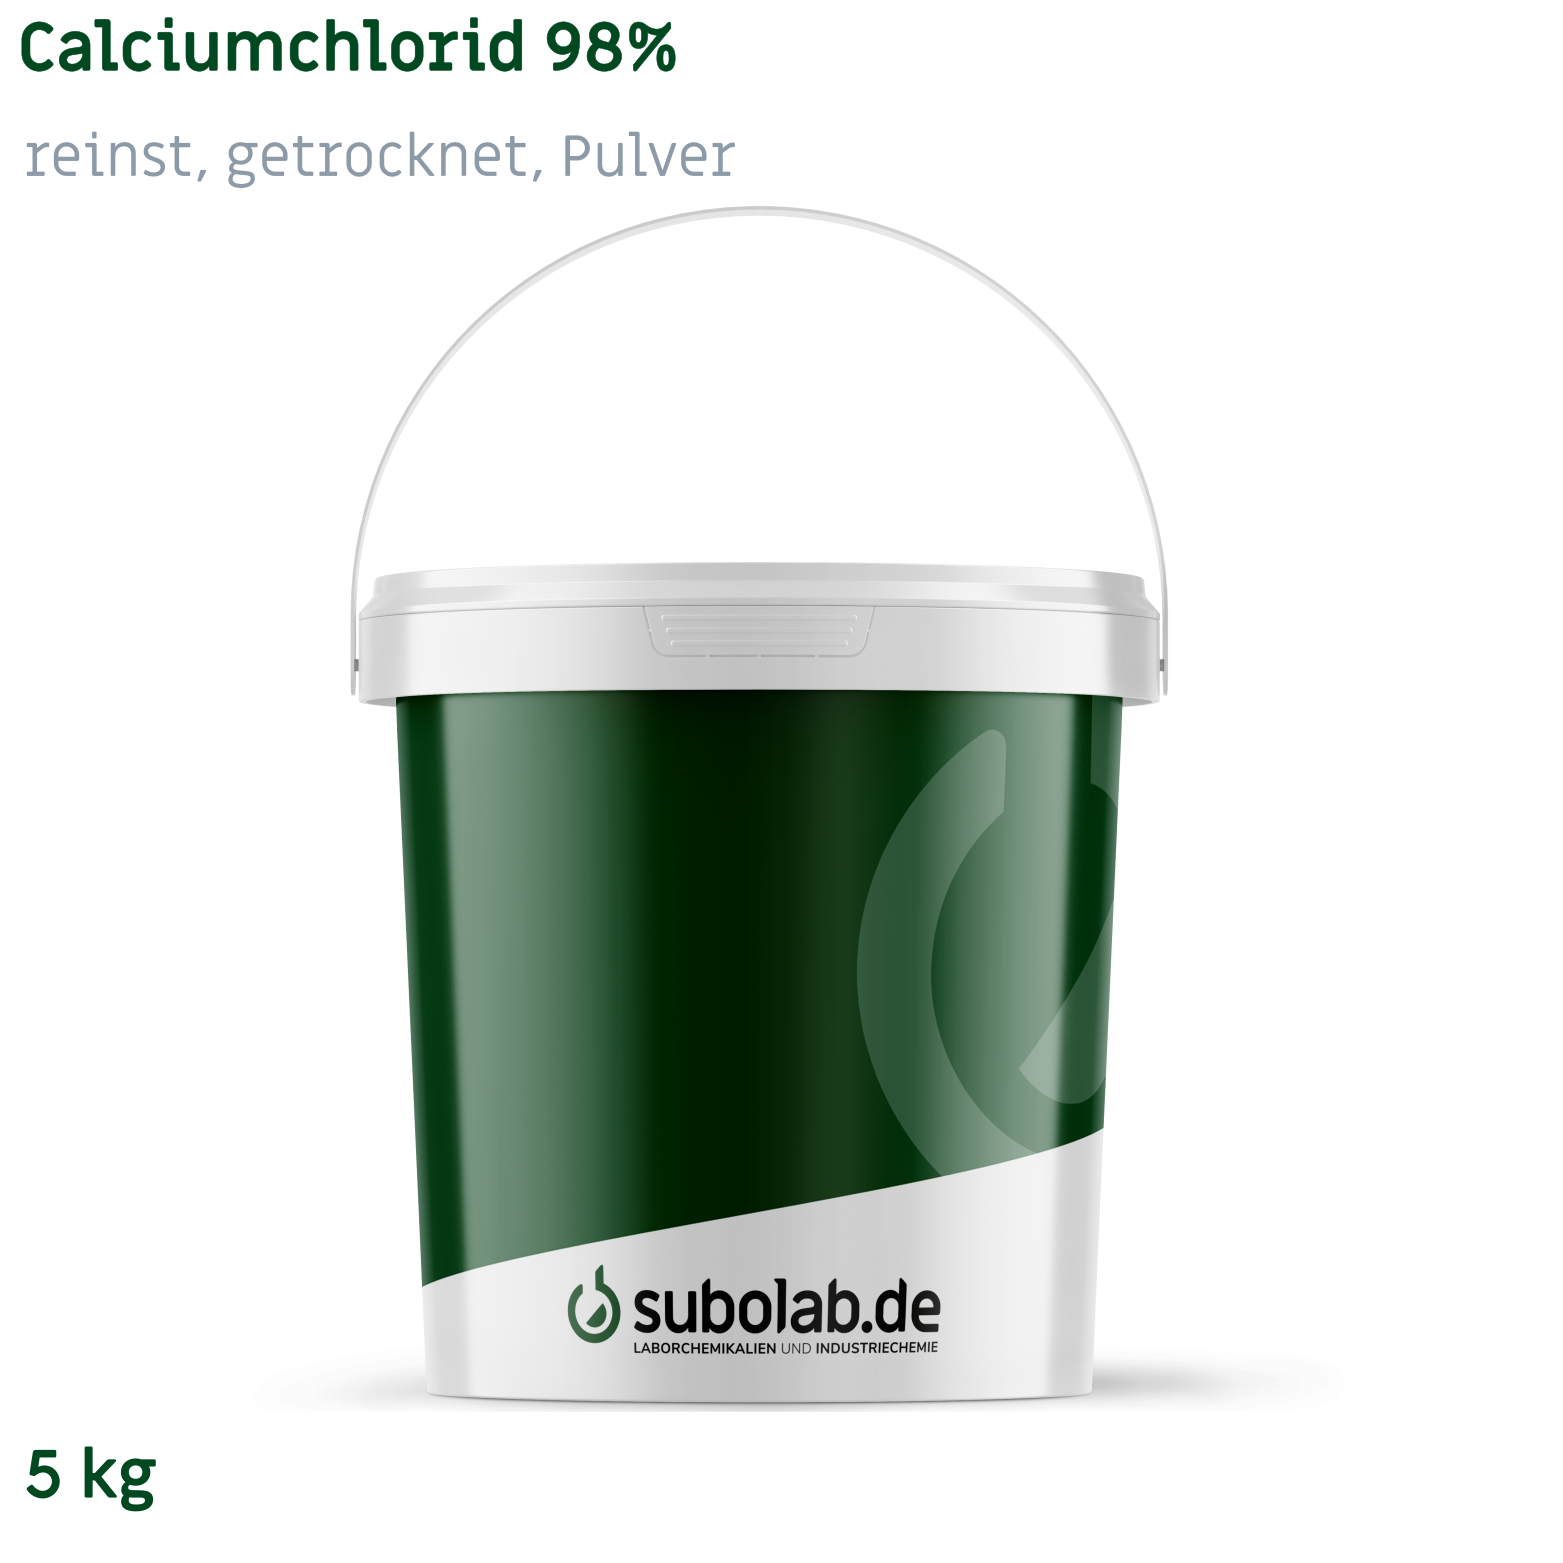 Bild von Calciumchlorid 98% reinst, getrocknet, Pulver (5 kg)